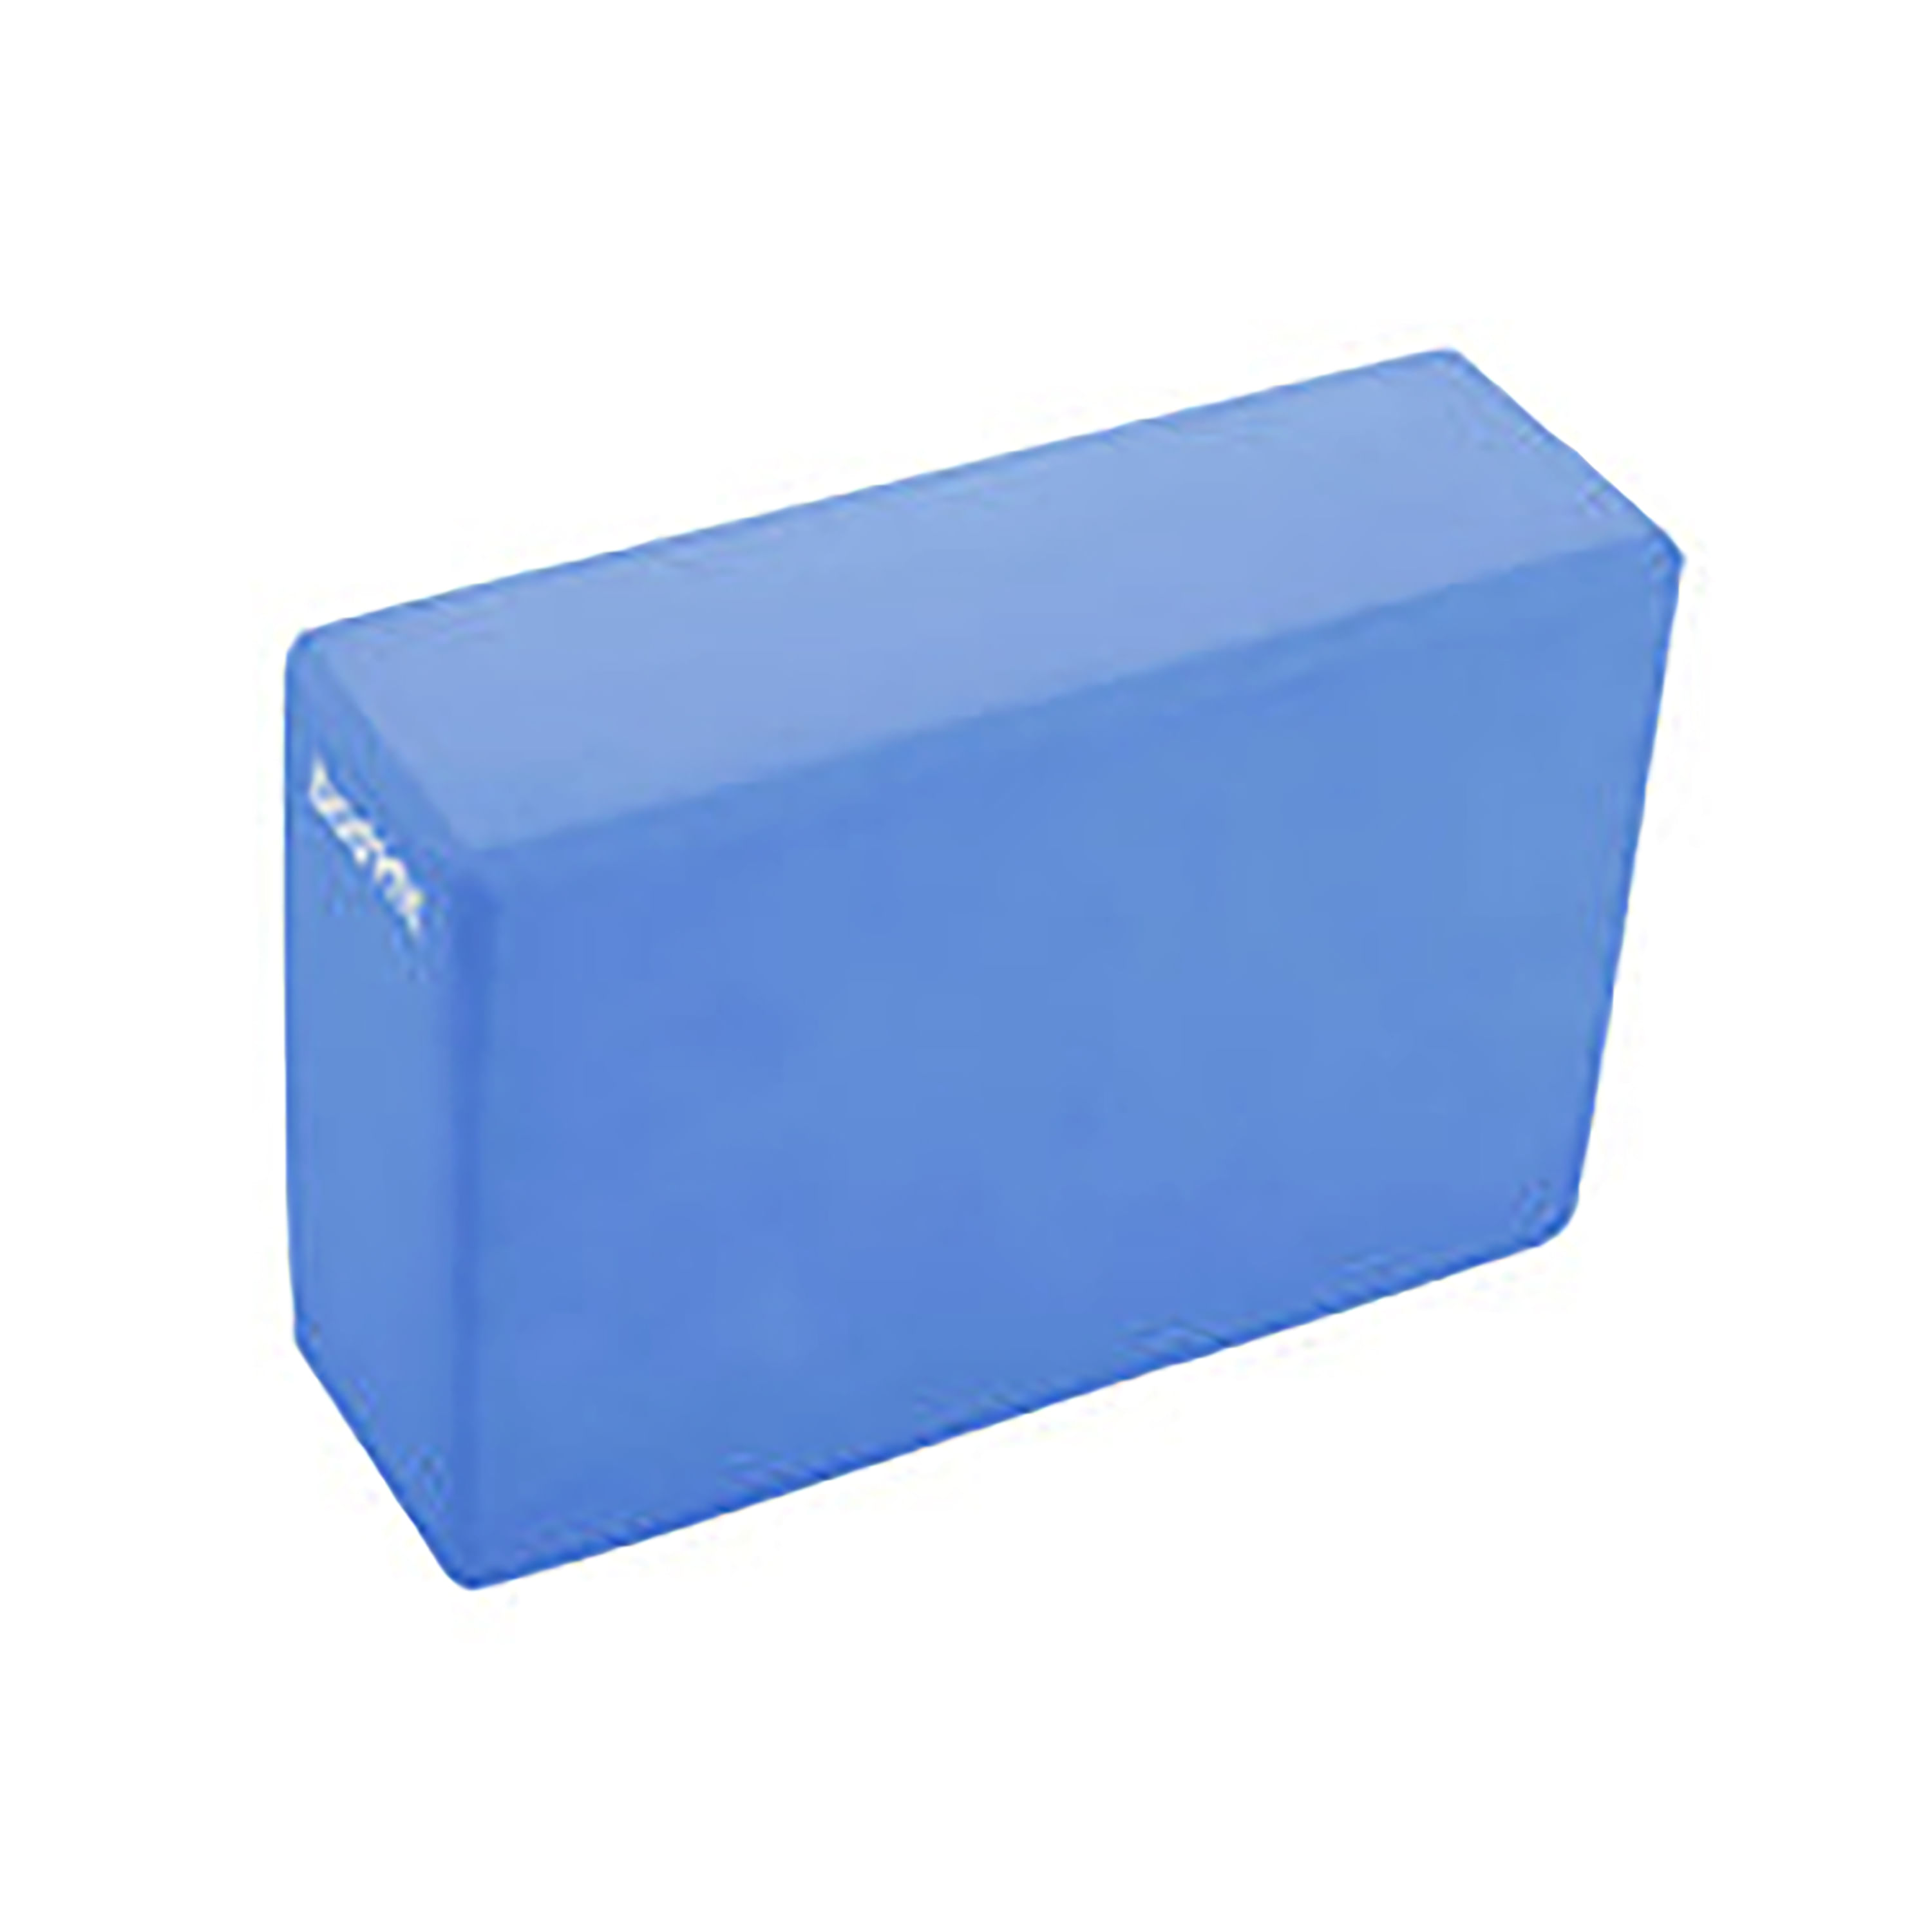 Bloque de apoyo para yoga 22,50x15x7,50cm. Color azul